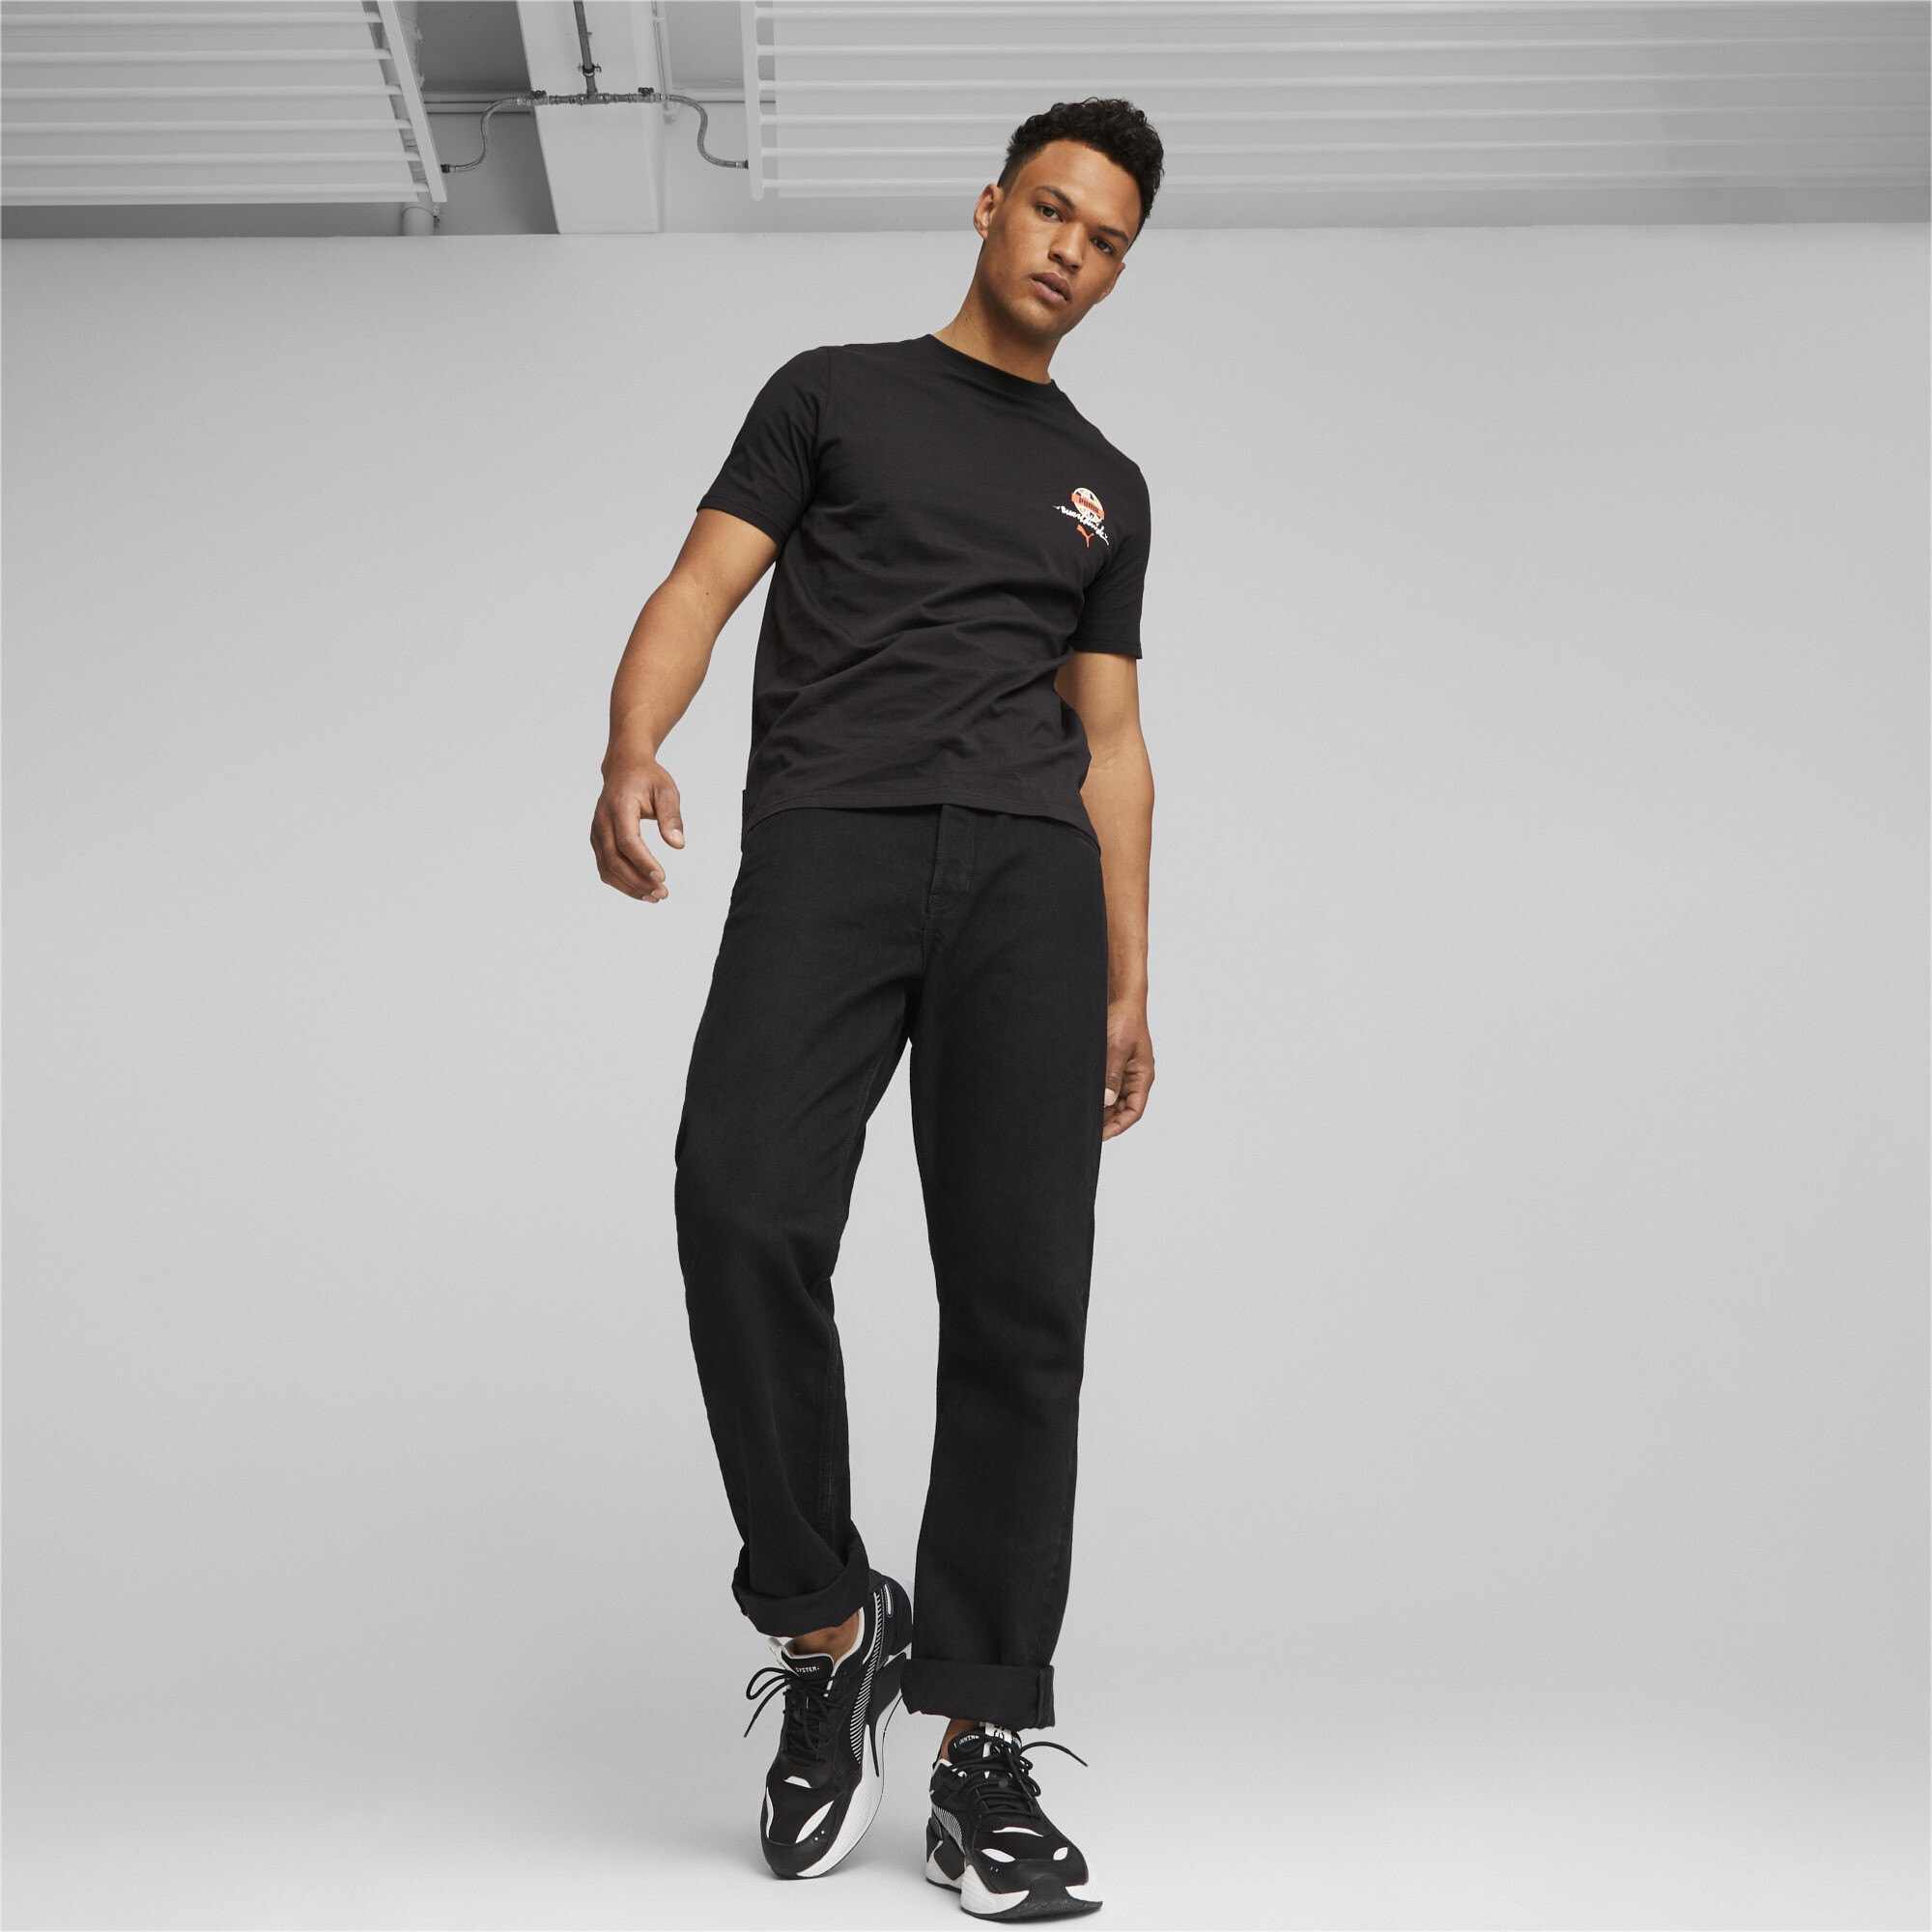 Men's Sportswear By PUMA T-Shirt In Black, Size Large